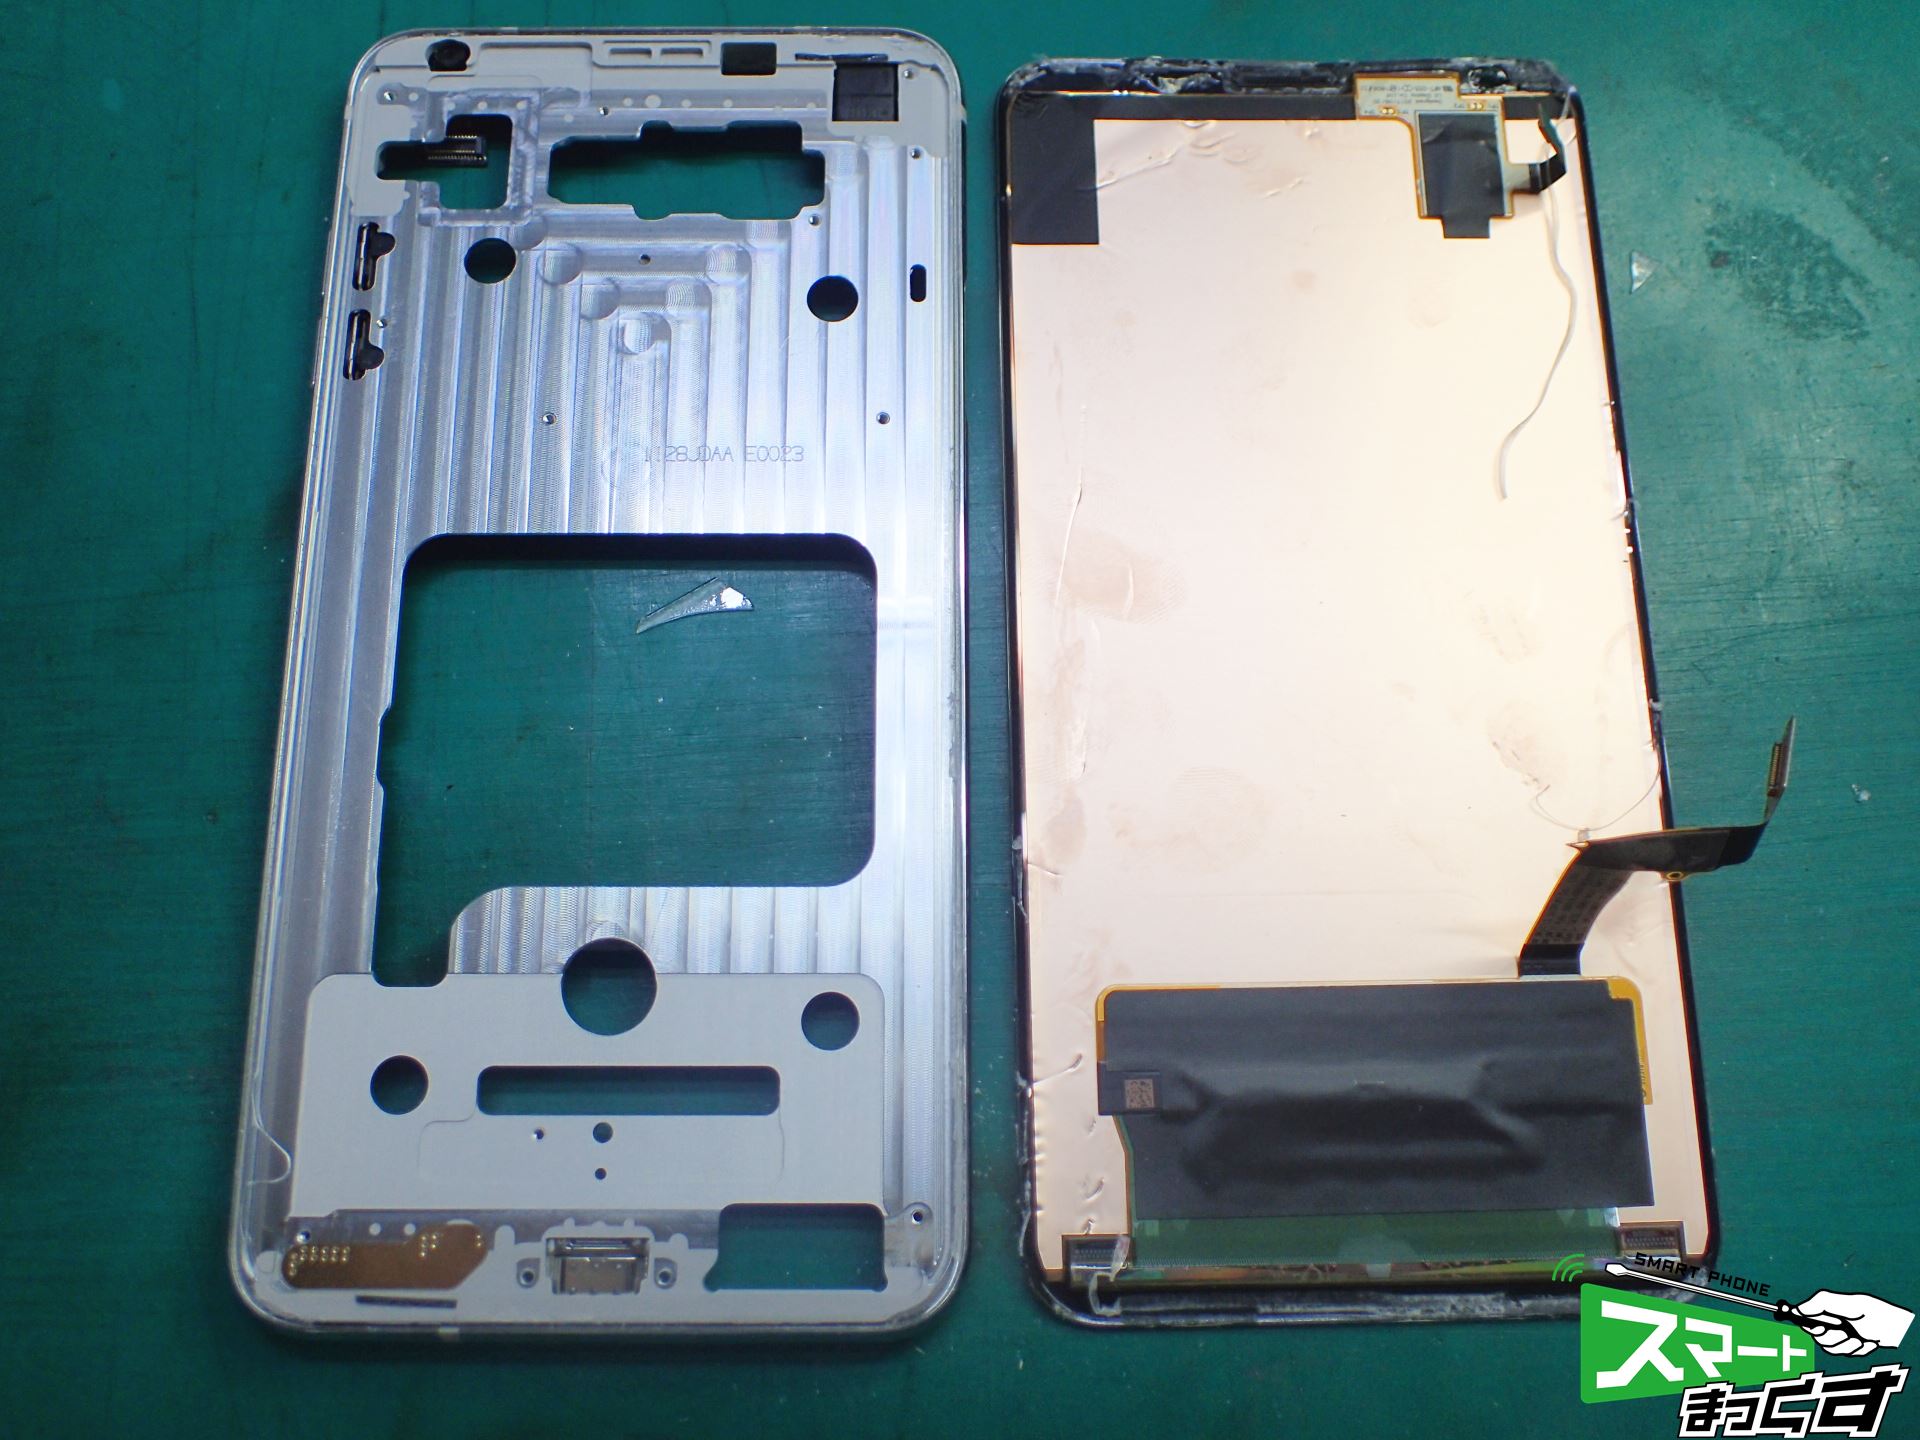 【即日修理】LG V30+ L-01K 画面交換修理 写真付きで修理解説！ - 東京・大阪・滋賀のスマートフォン修理 スマートまっくす | 全国対応